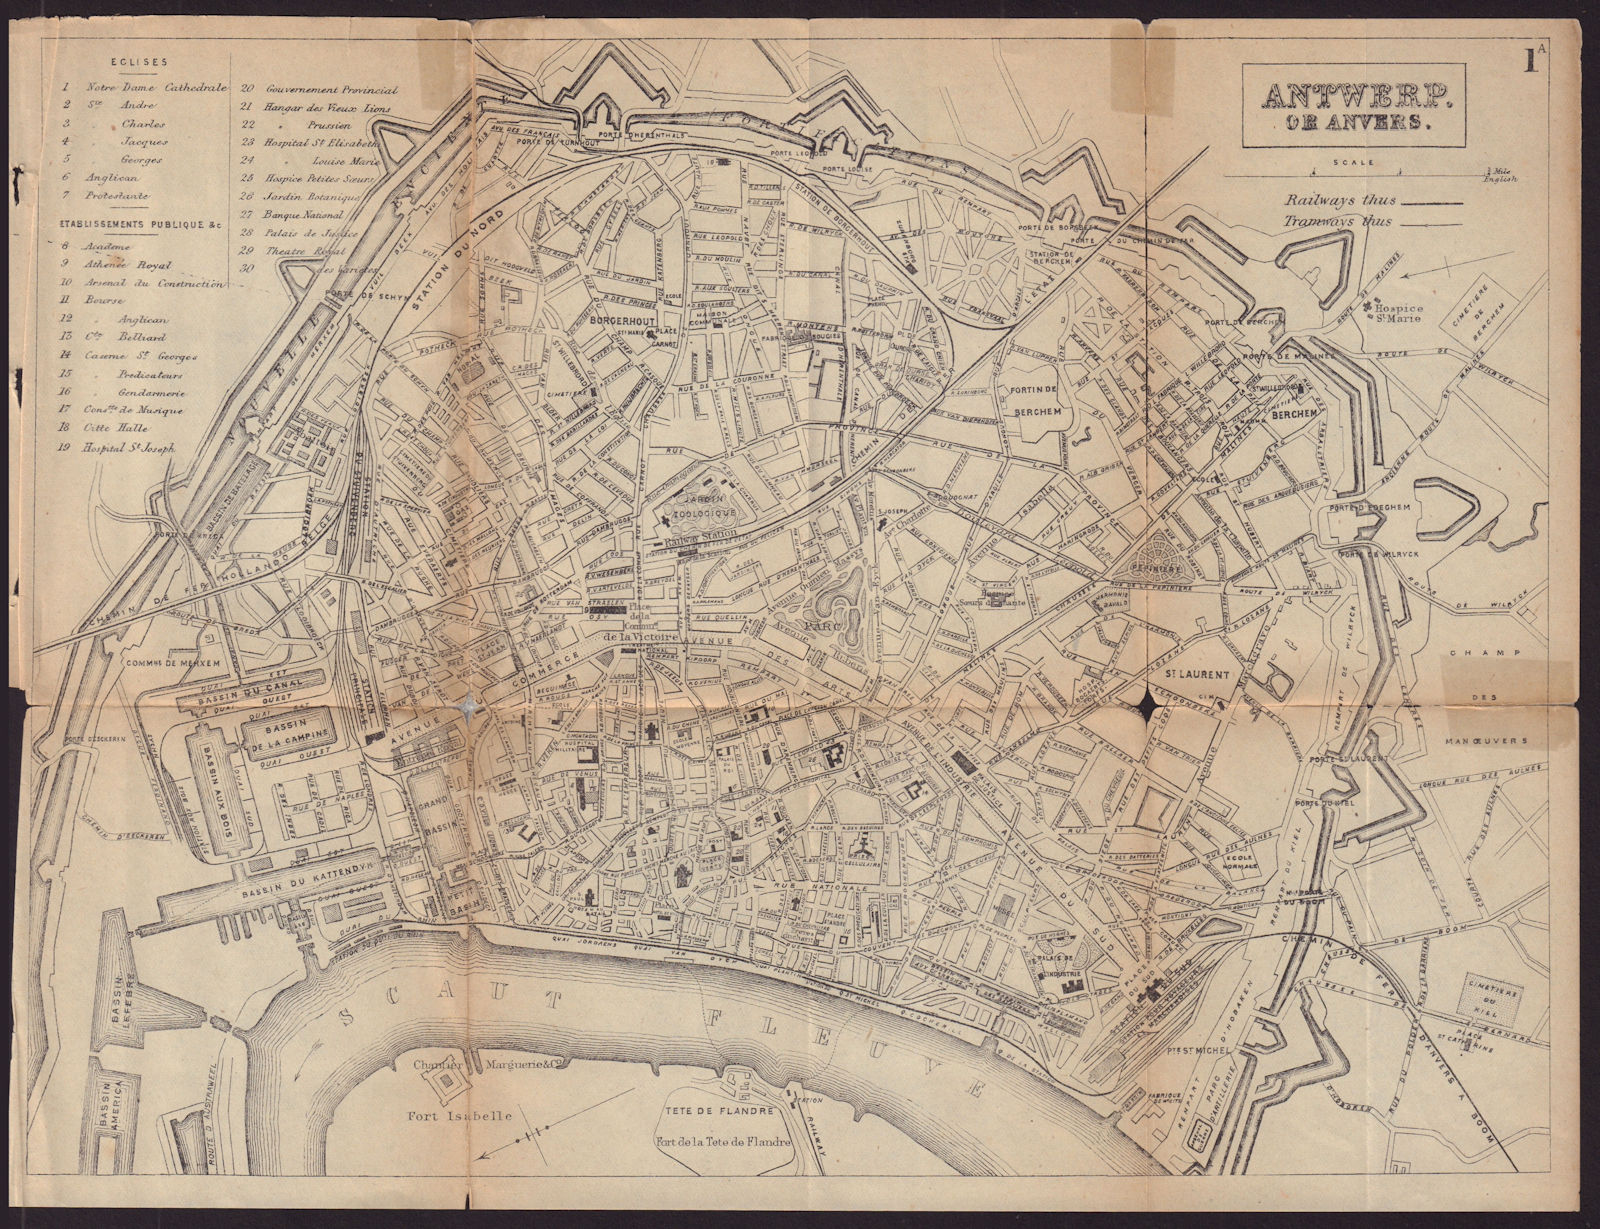 ANTWERP ANVERS ANTWERPEN antique town plan city map. Belgium. BRADSHAW c1898